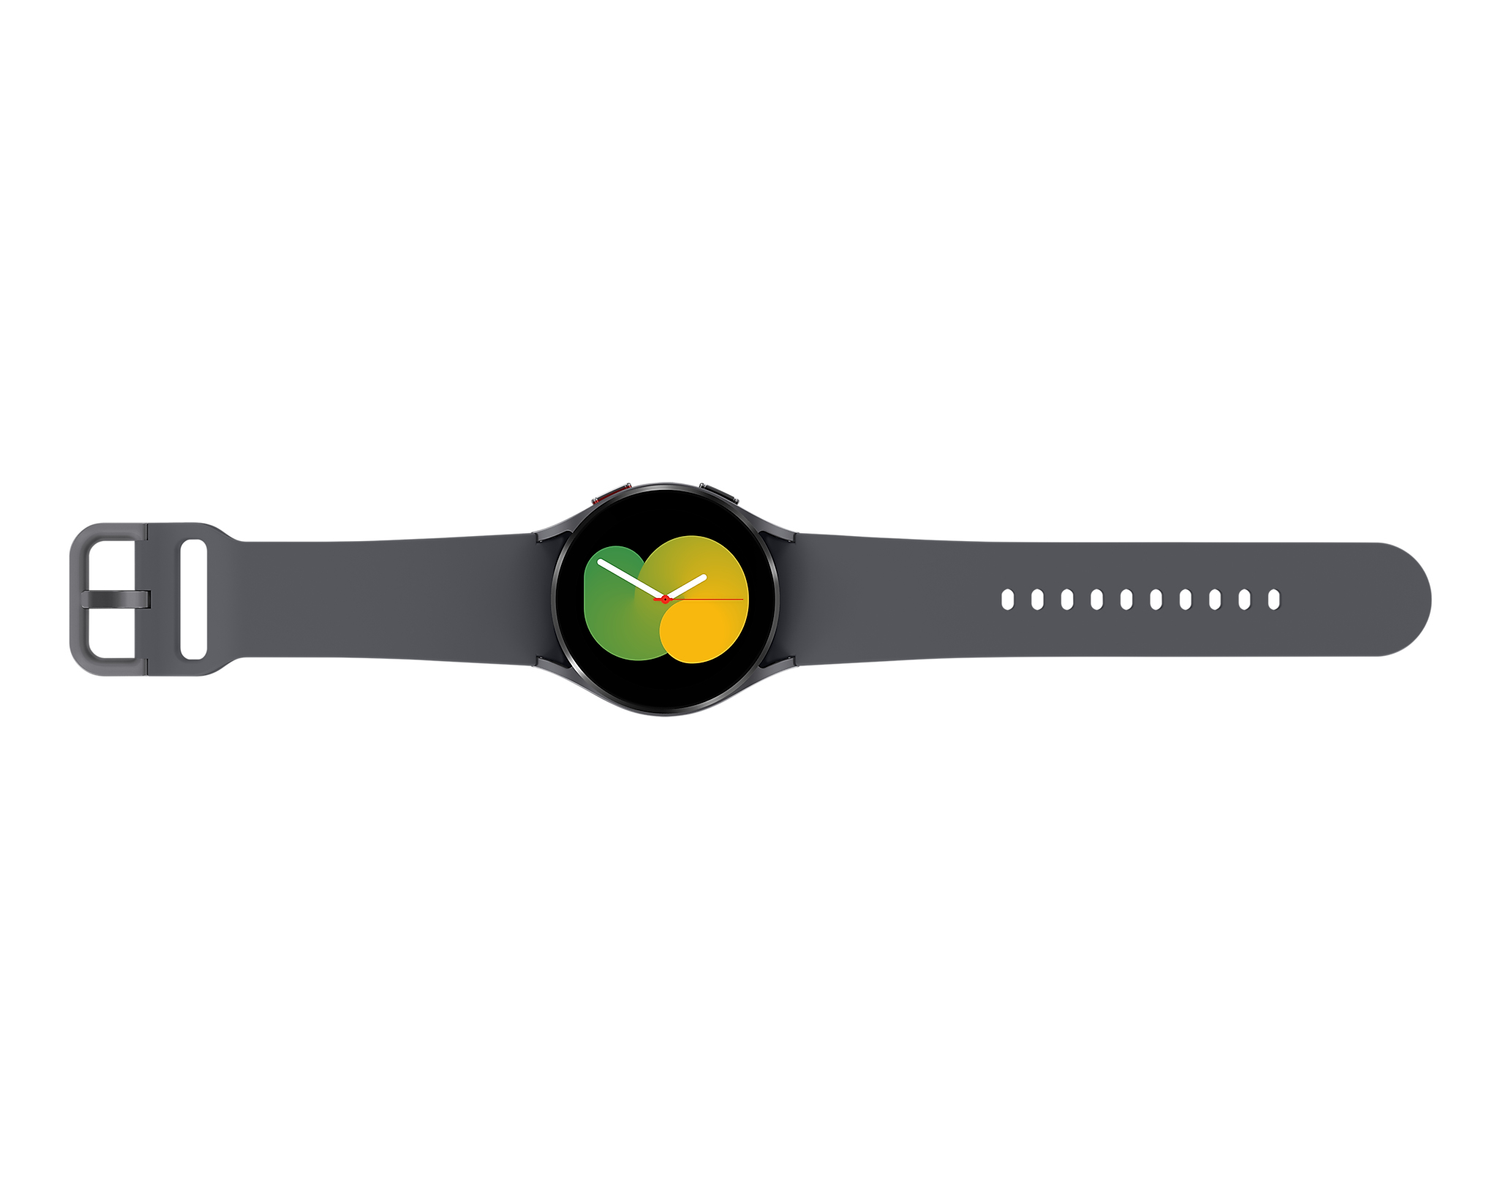 Grau Watch5 SAMSUNG Smartwatch R900 Silikon, Galaxy